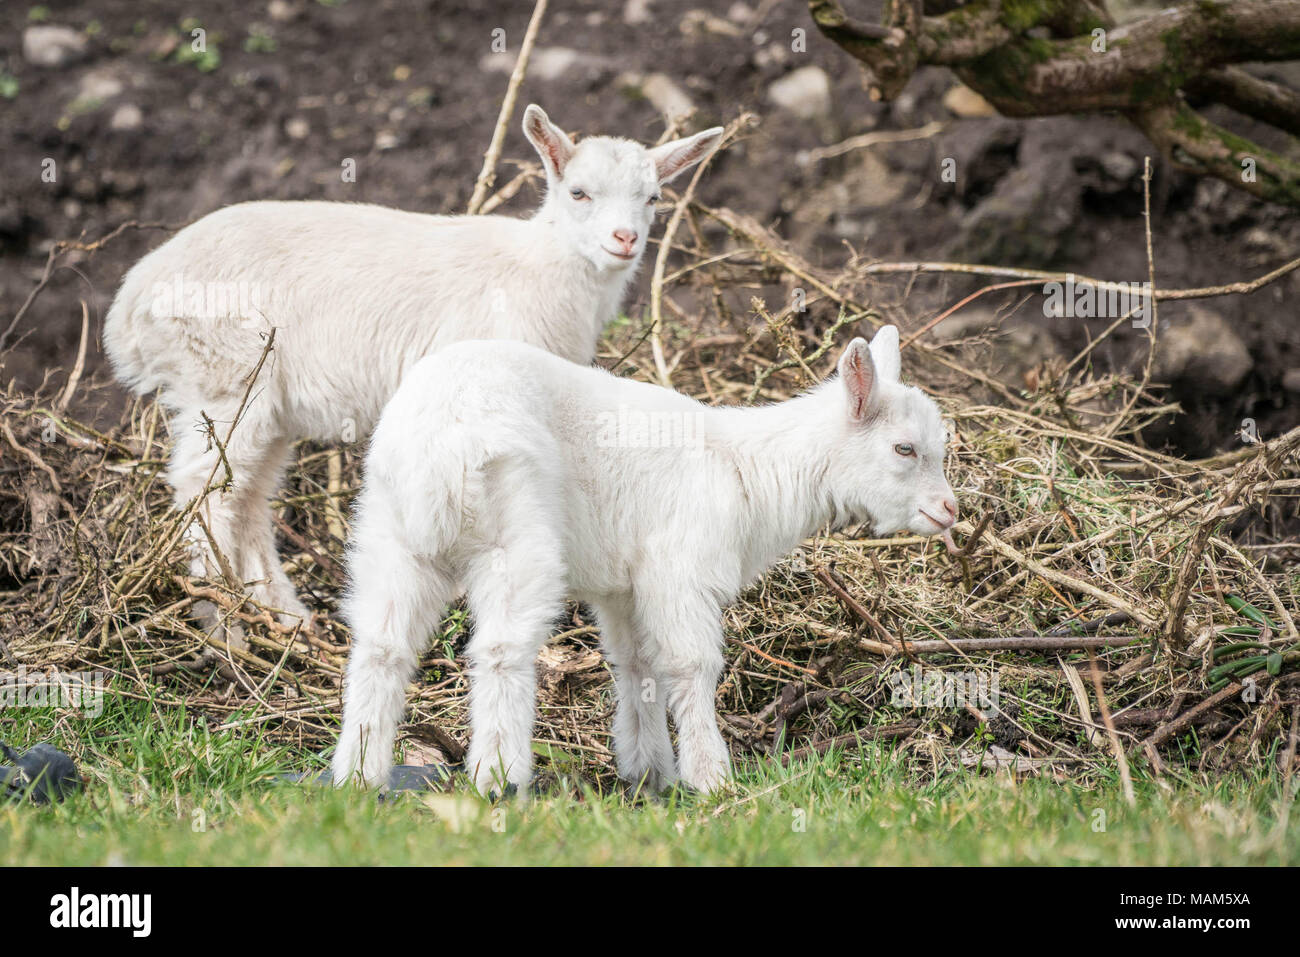 31/03/2018 nommé cette Geeps lits jumeaux et que l'appartenance à Angela Bermingham à son domicile à Murneen, Claremorris, Comté de Mayo. Geeps sont une race croisée entre chèvres et moutons et sont très rares. Photo : Keith Heneghan Banque D'Images